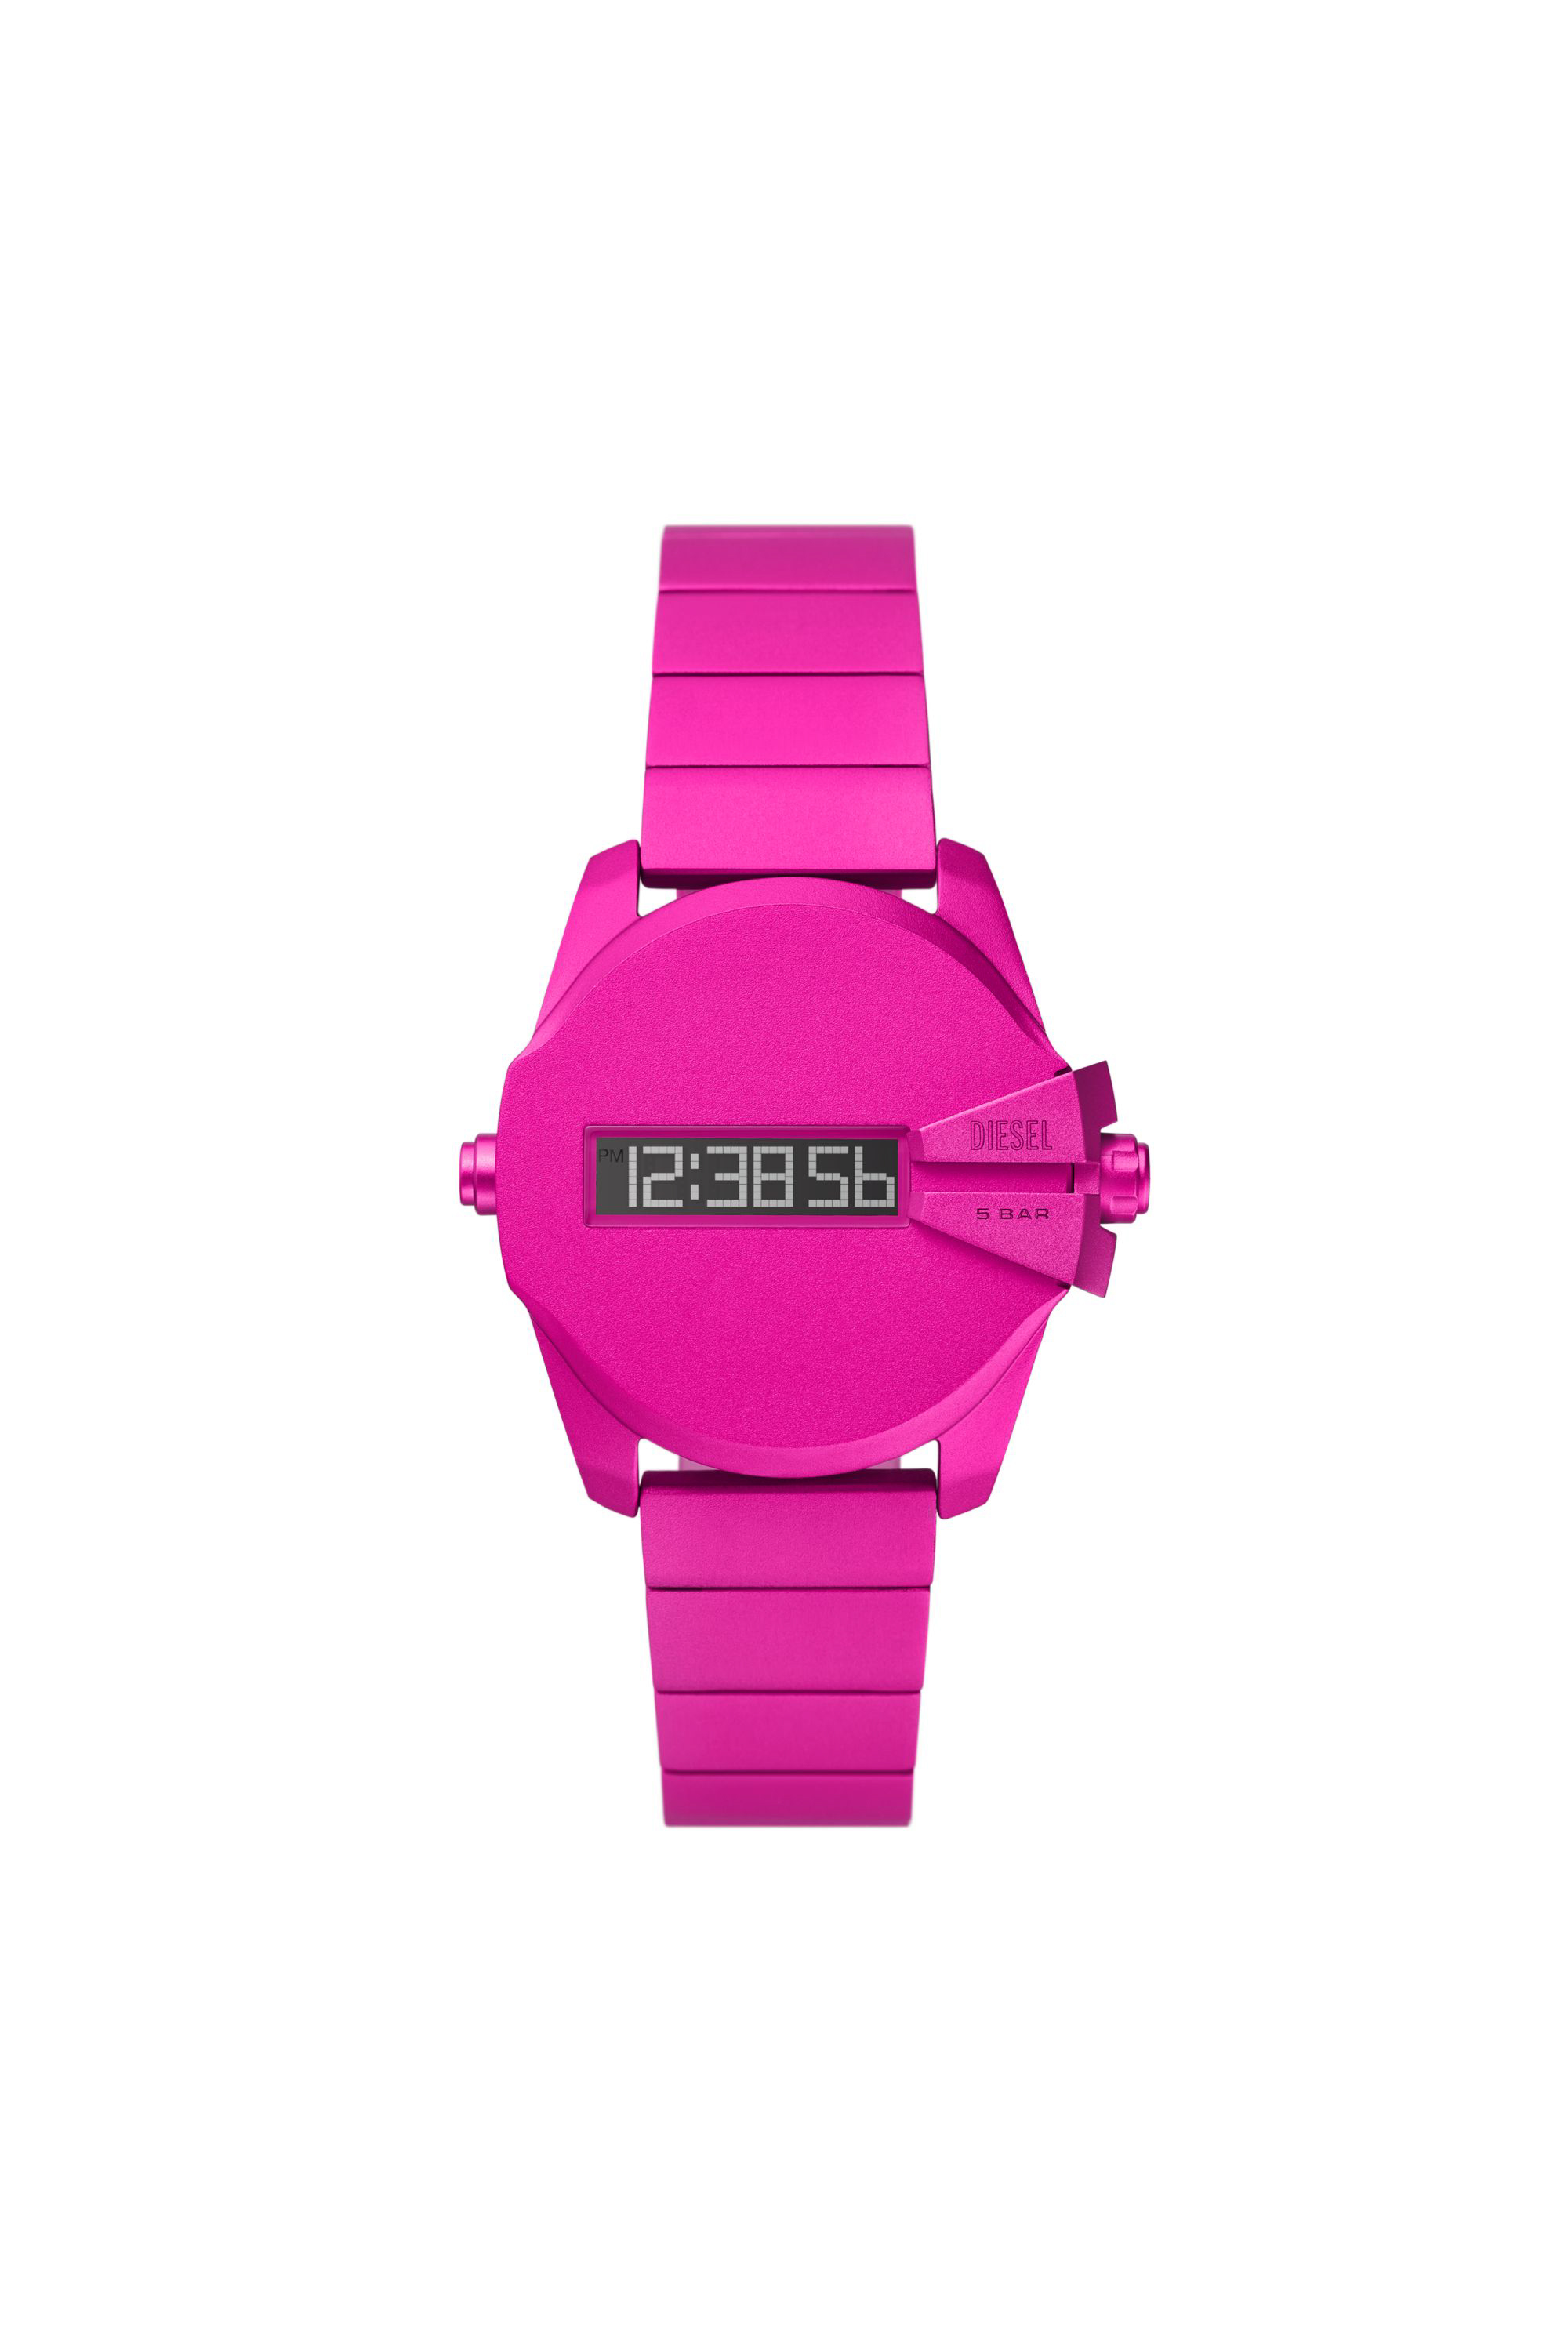 Diesel Baby Chief Digital Pink Aluminum Watch In Purple